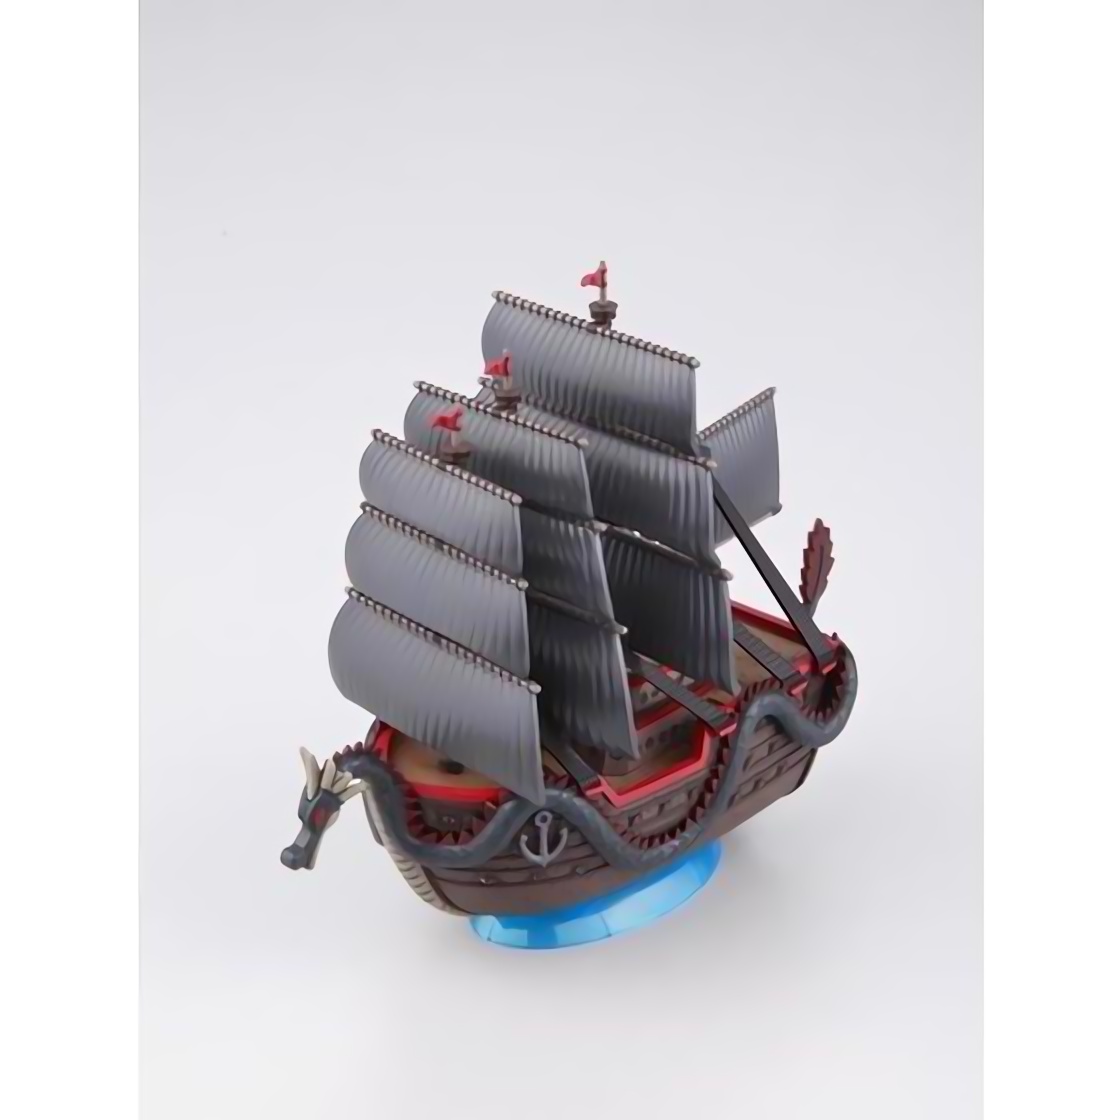 ワンピース偉大なる船 グランドシップ コレクション ドラゴンの船 フィギュアレビュー Figg